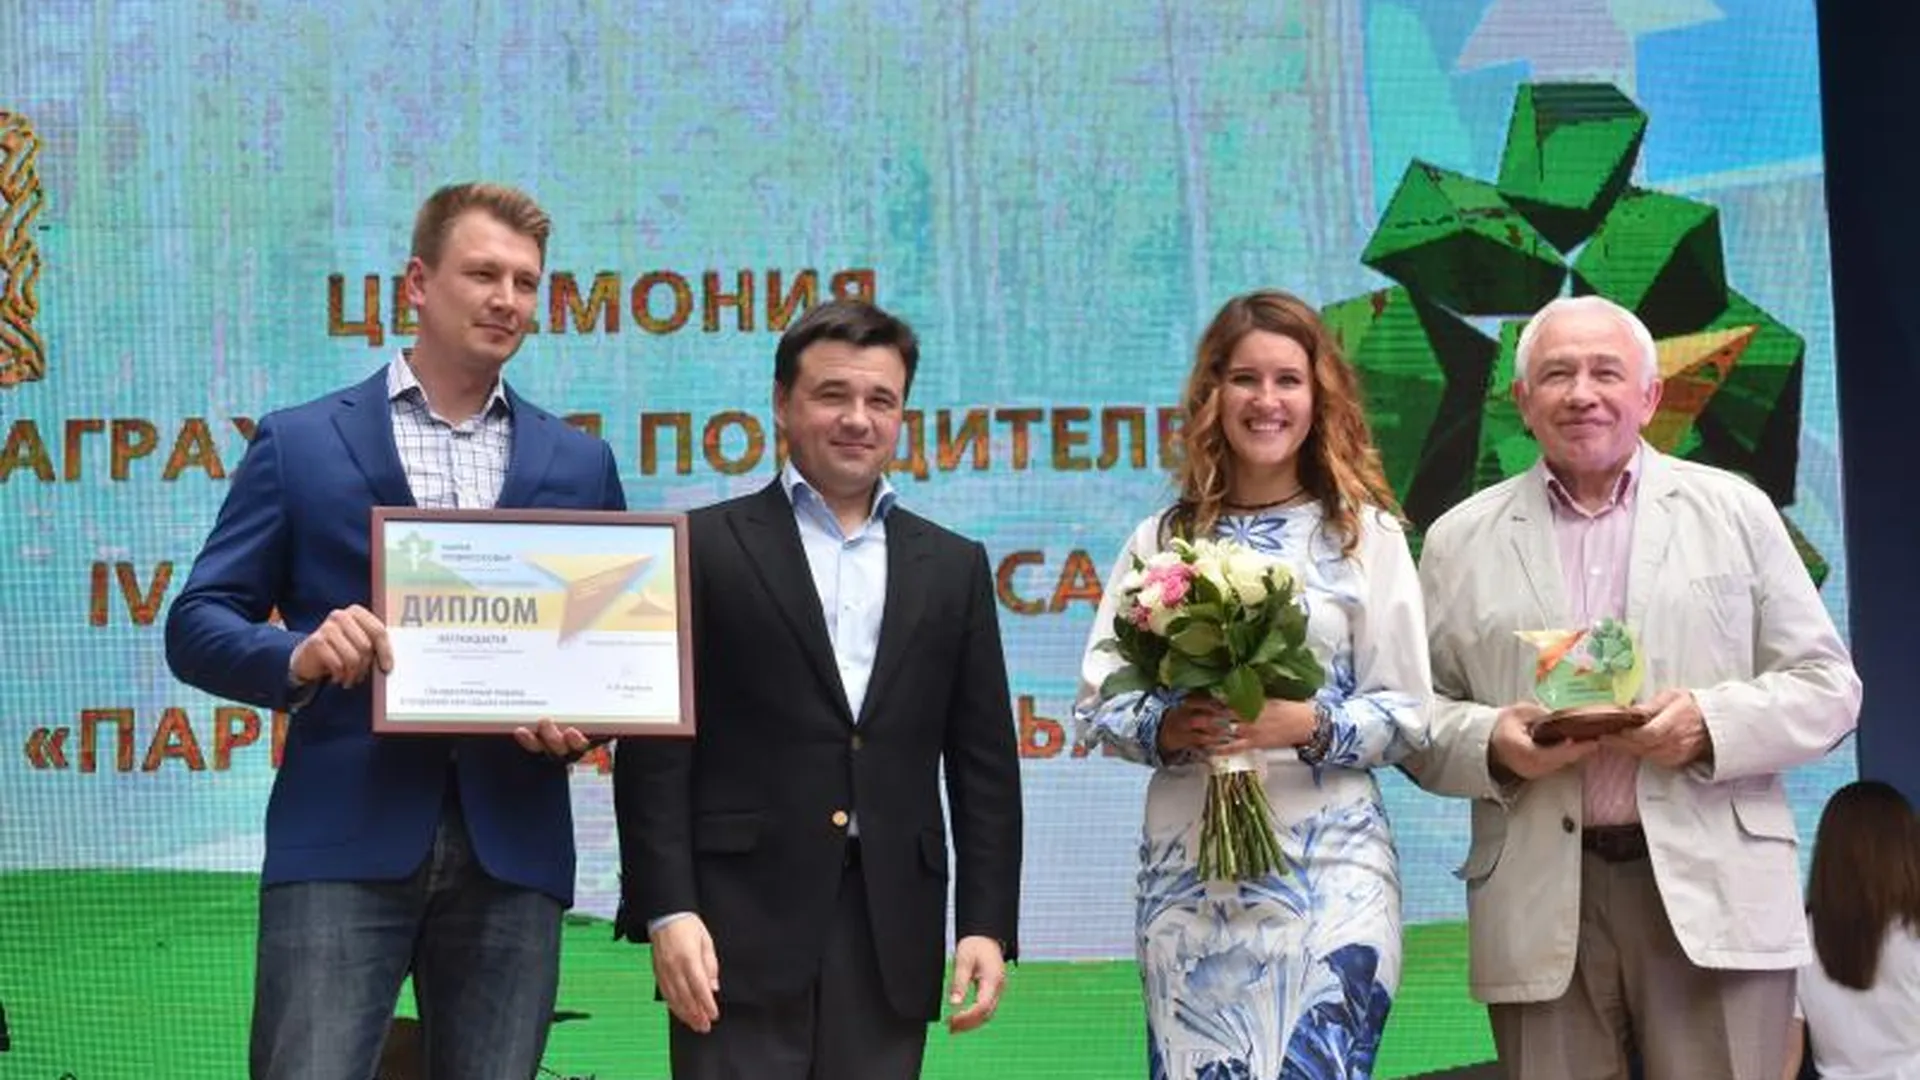 Награждение победителей конкурса «Парки Подмосковья» состоялось в Жуковском